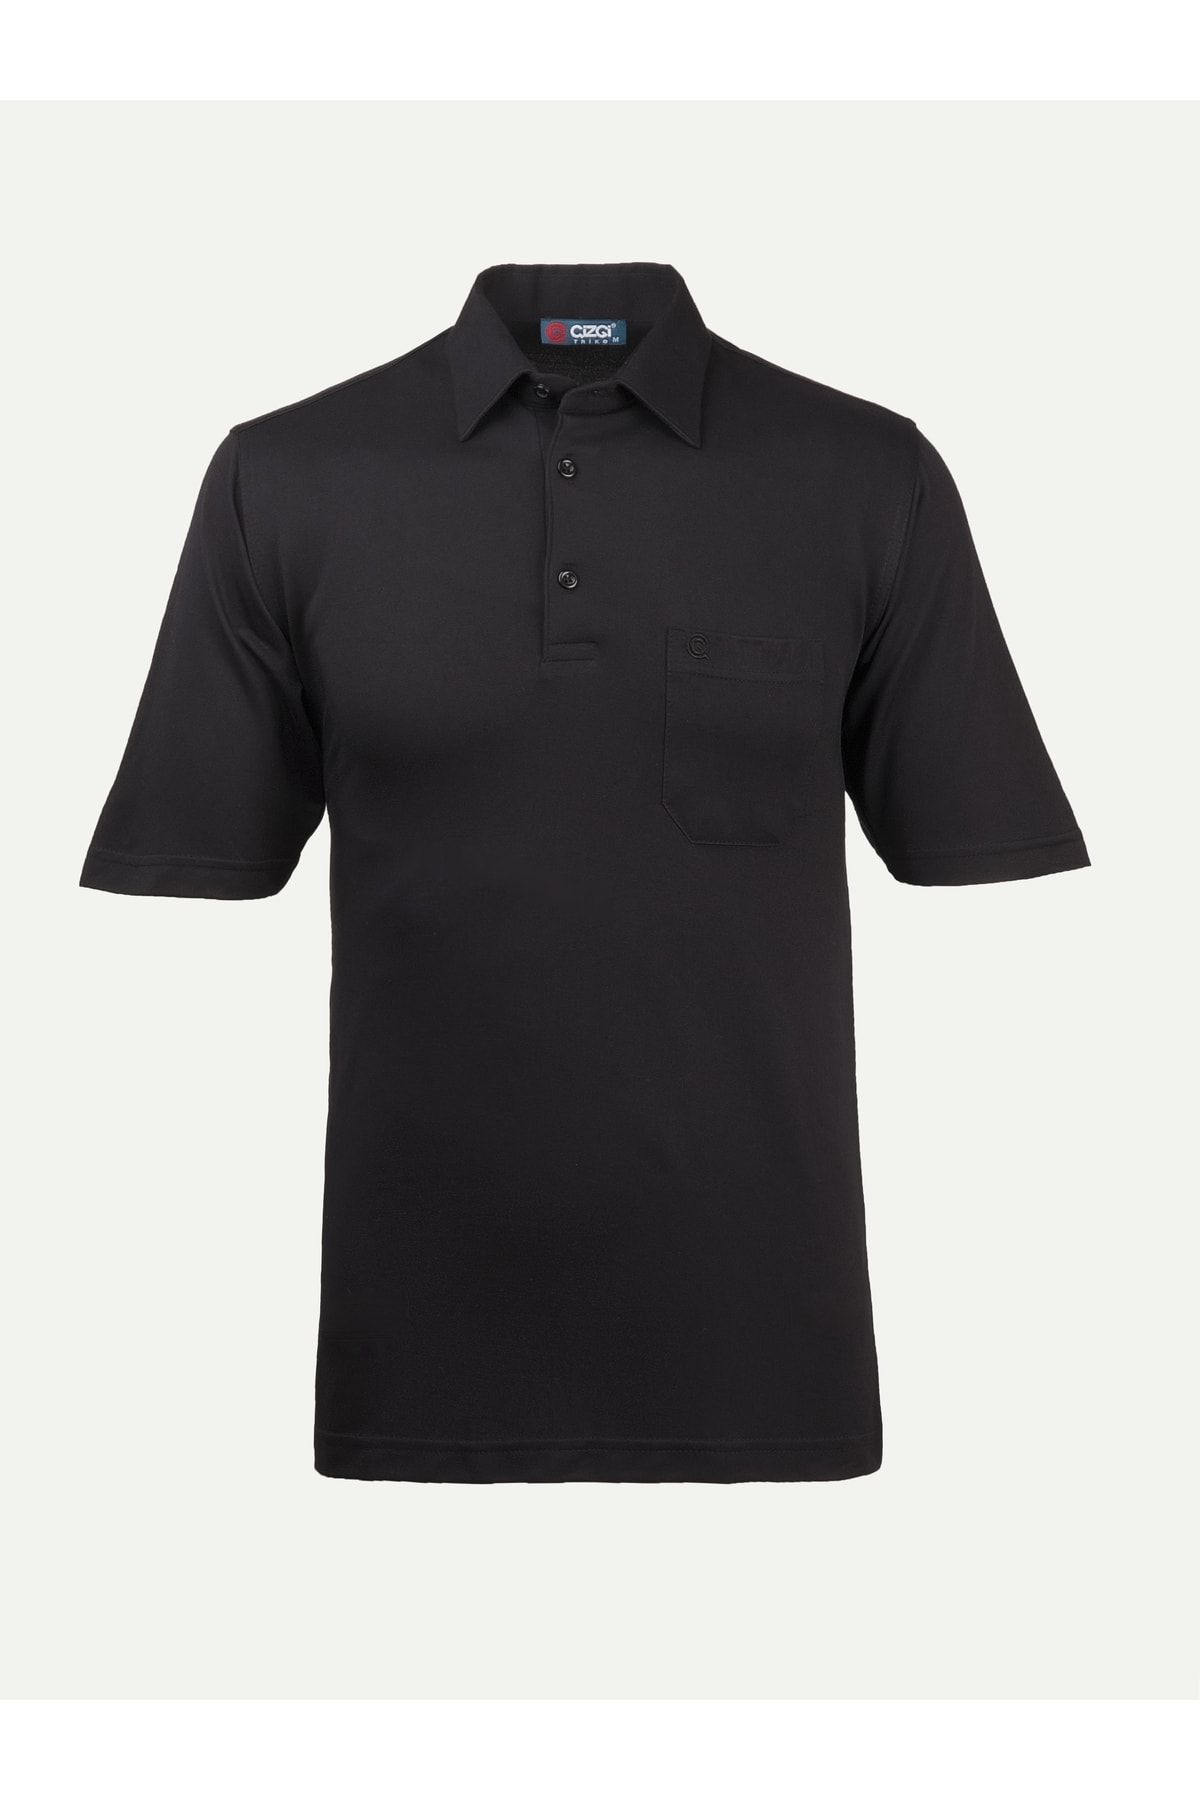 Çizgi Triko Erkek Gömlek Yaka Tişört Düz Siyah Renk Günlük Cep Detaylı